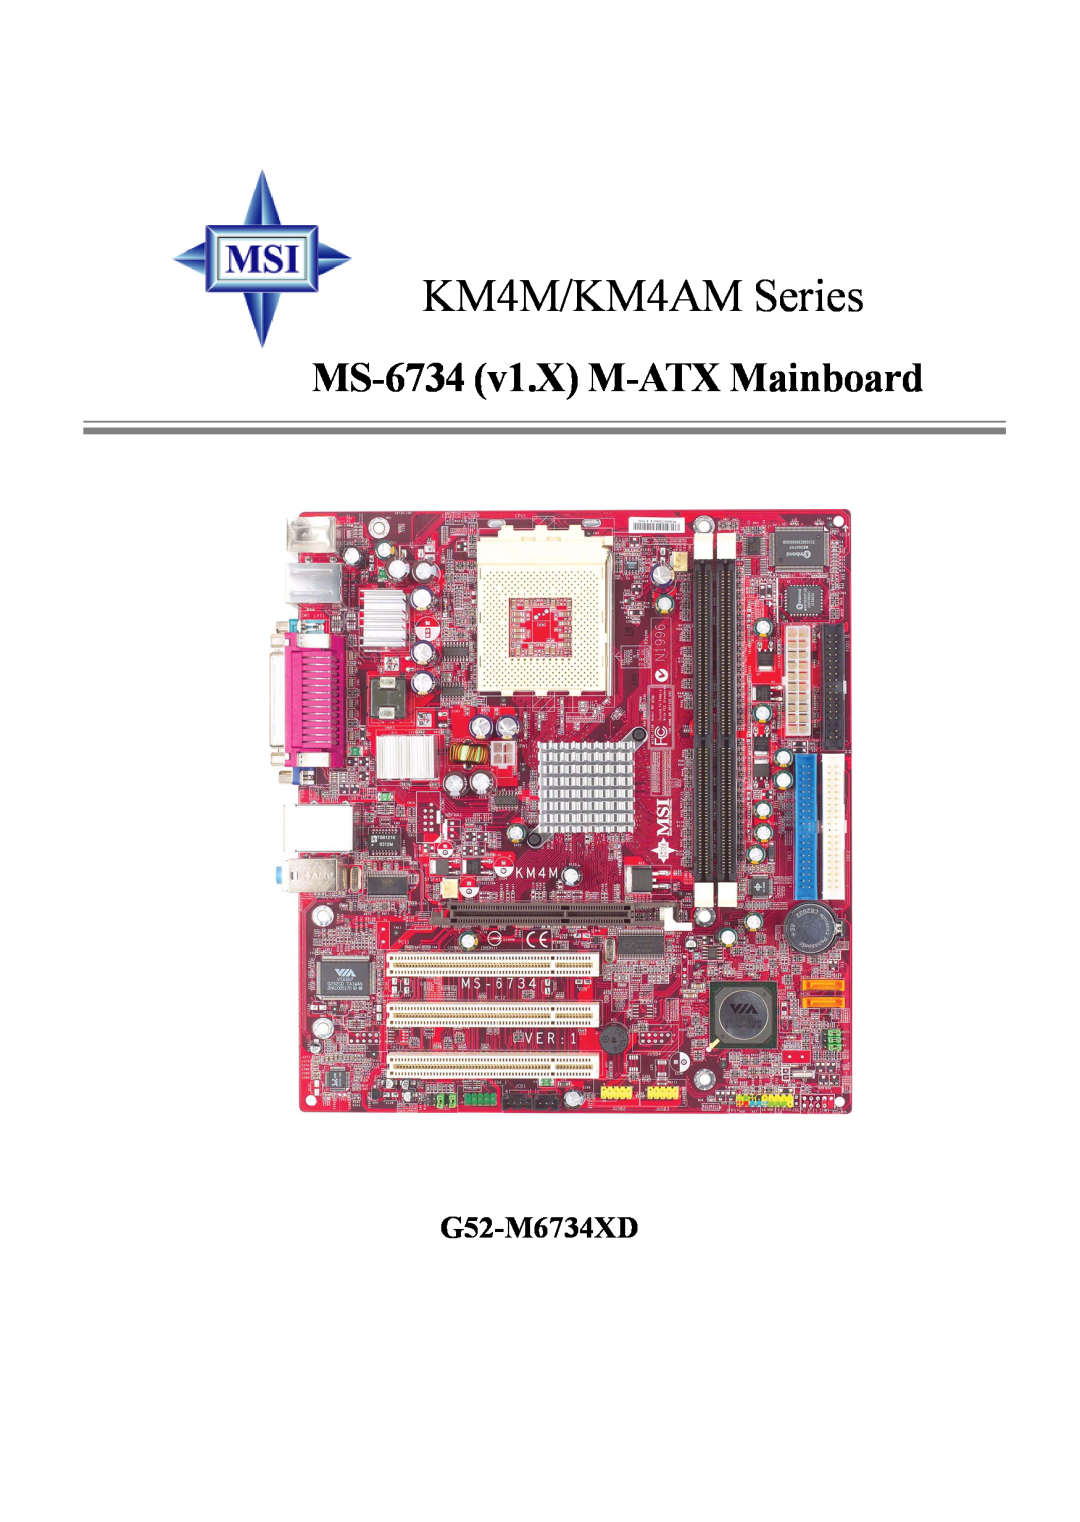 Intel manual KM4M/KM4AM Series, MS-6734 v1.X M-ATX Mainboard, G52-M6734XD 